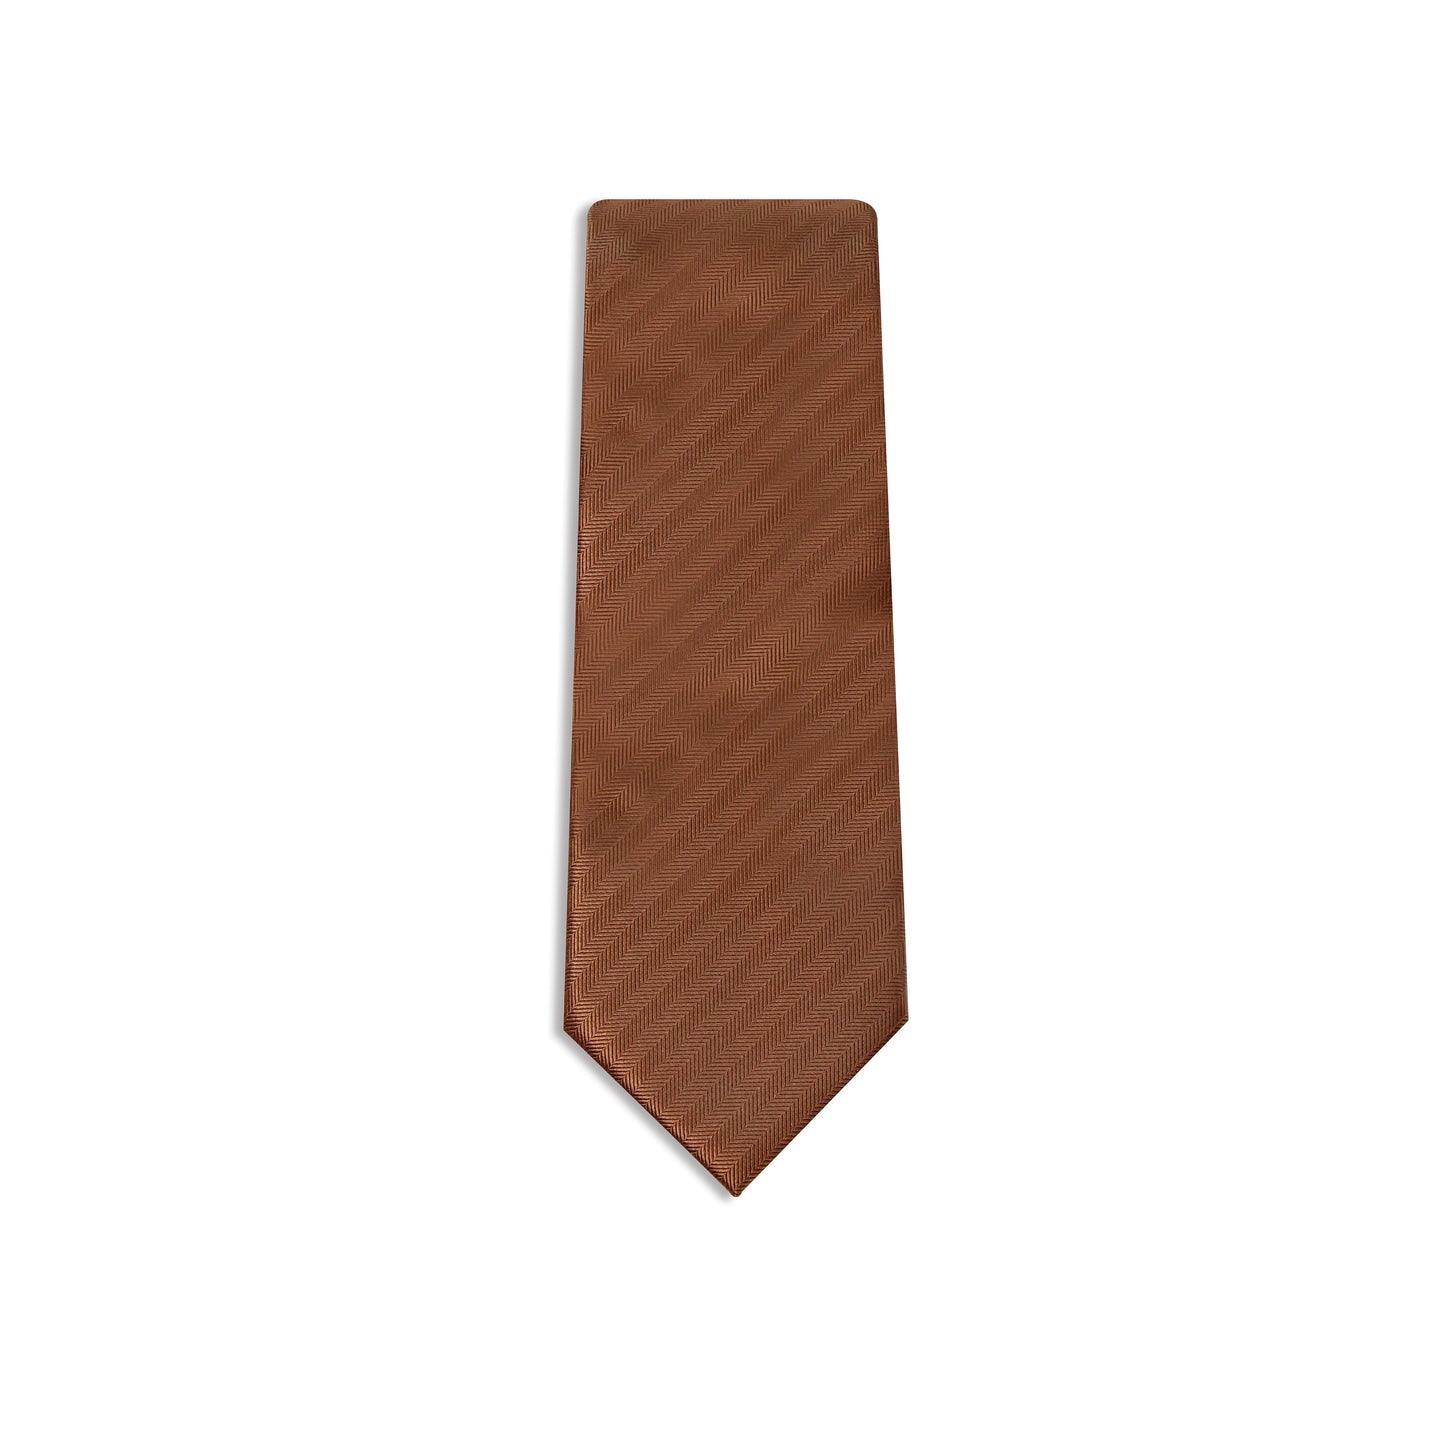 Men's Formal Tie.